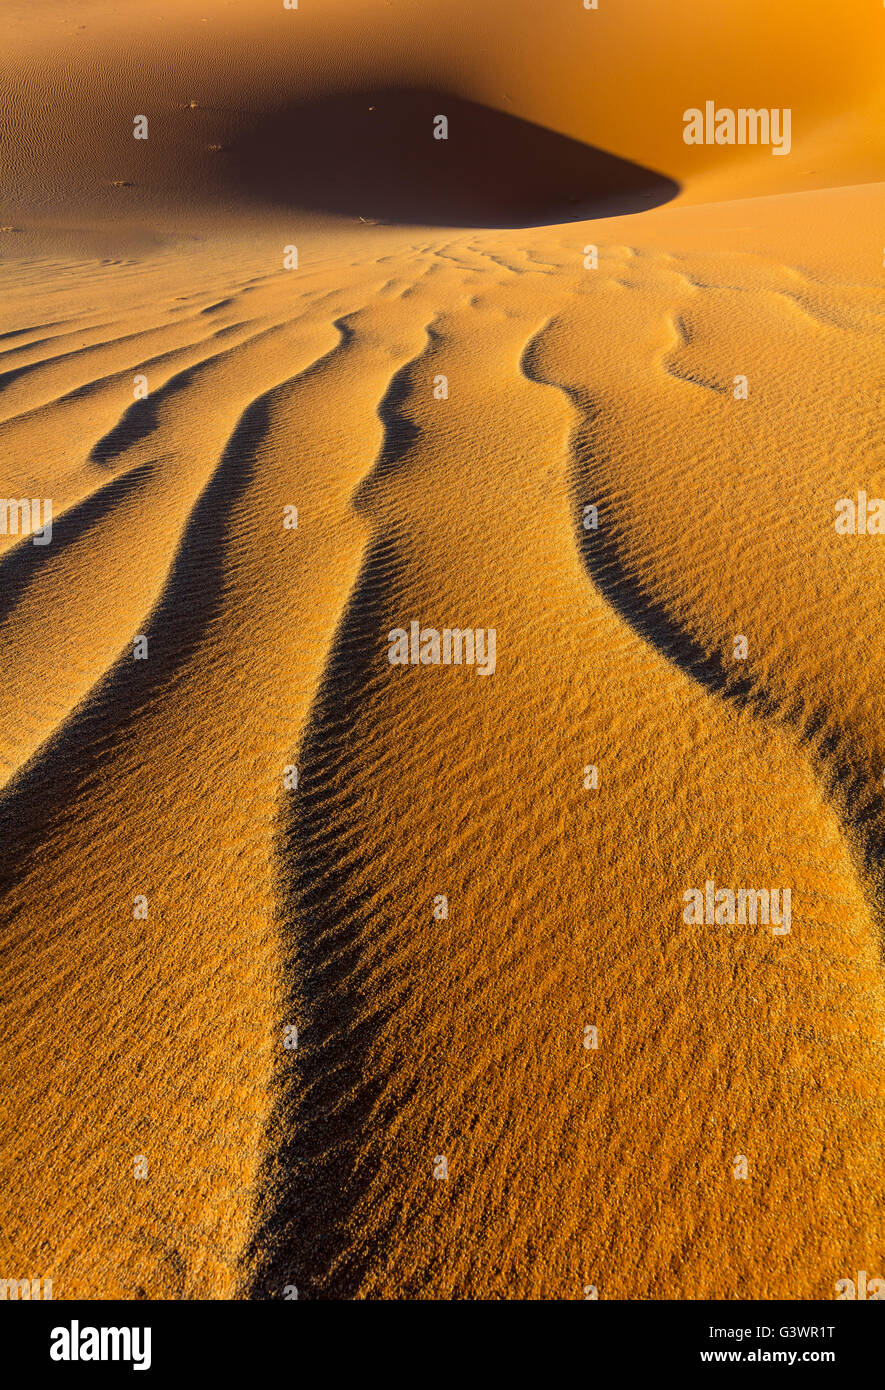 Sossusvlei est un sel et de l'argile pan entouré de hautes dunes rouges, situé au dans le parc national du Namib-Naukluft Namibie Banque D'Images